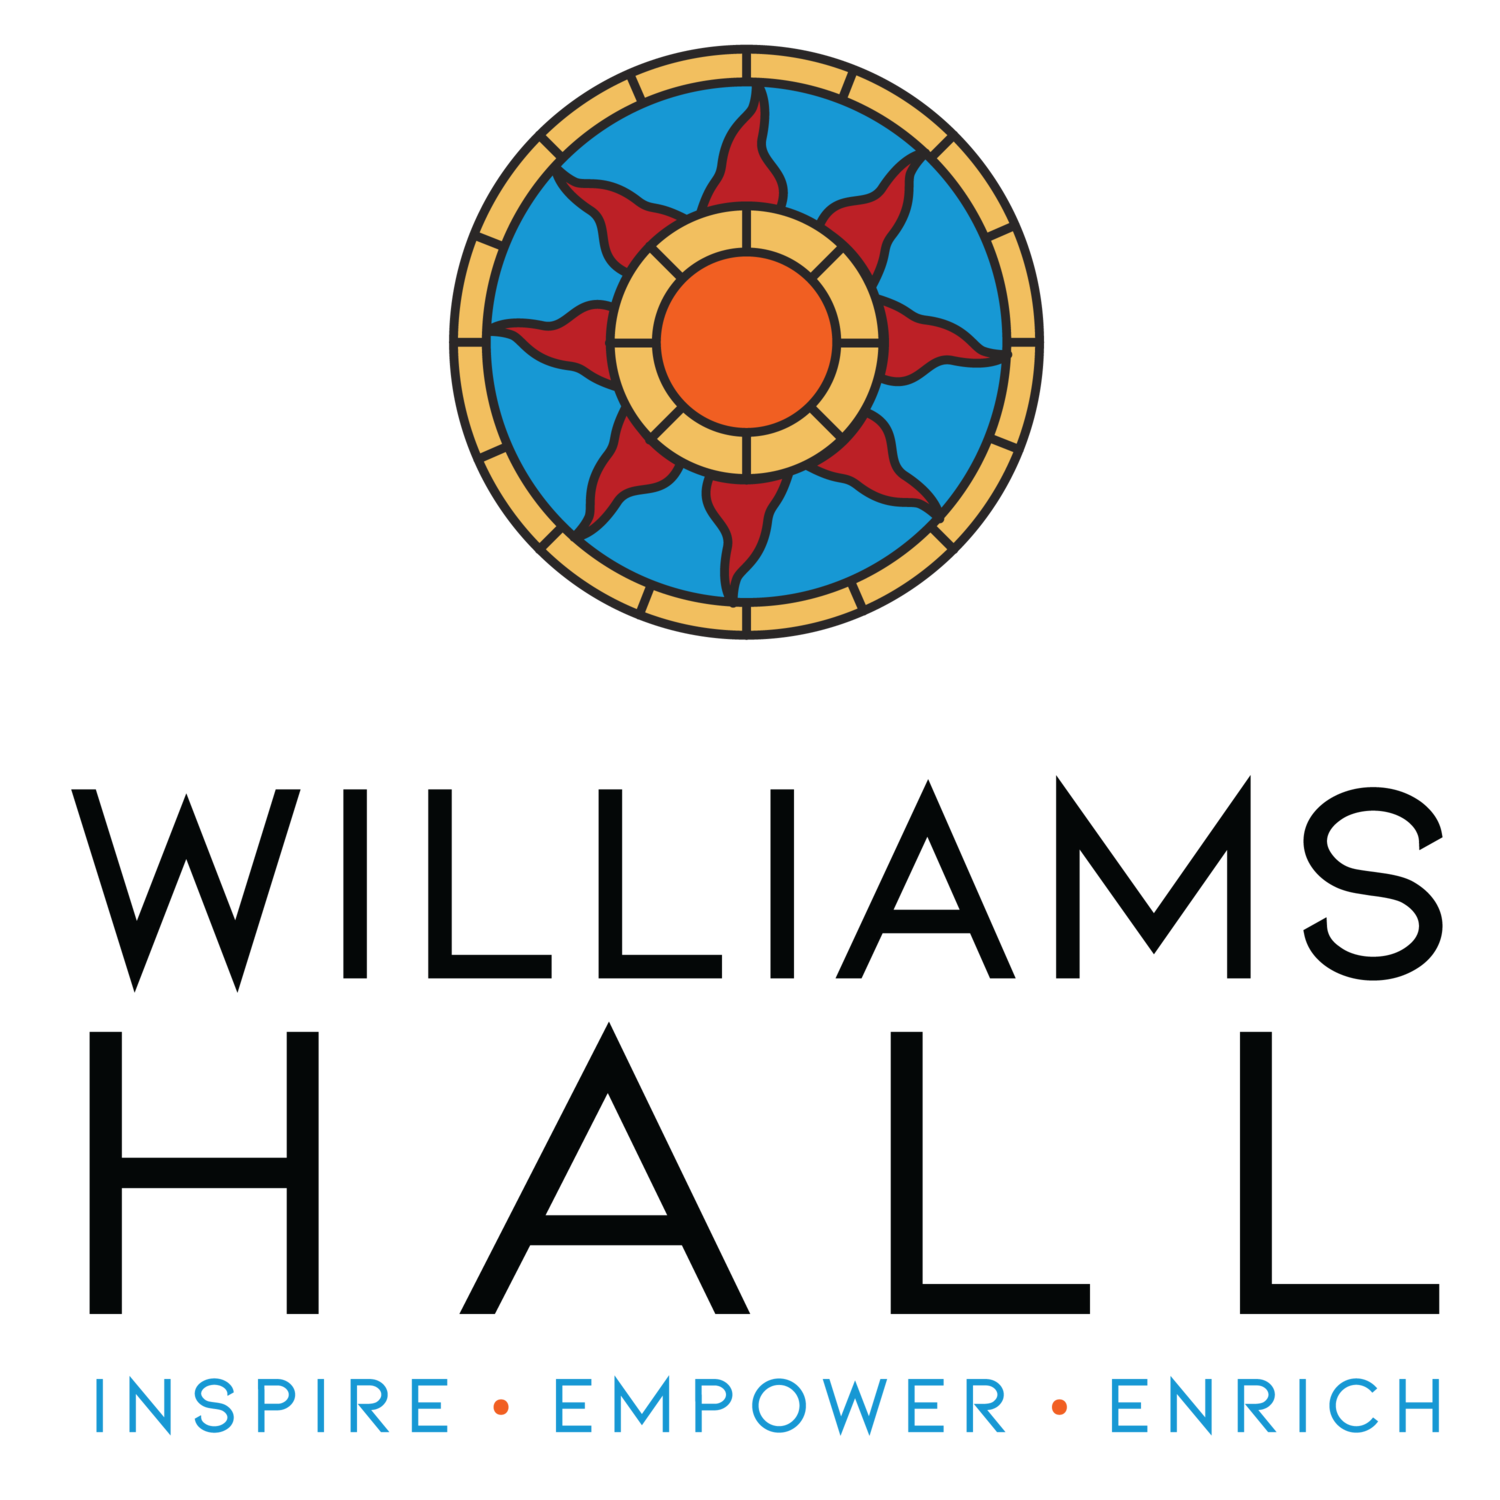 Williams Hall